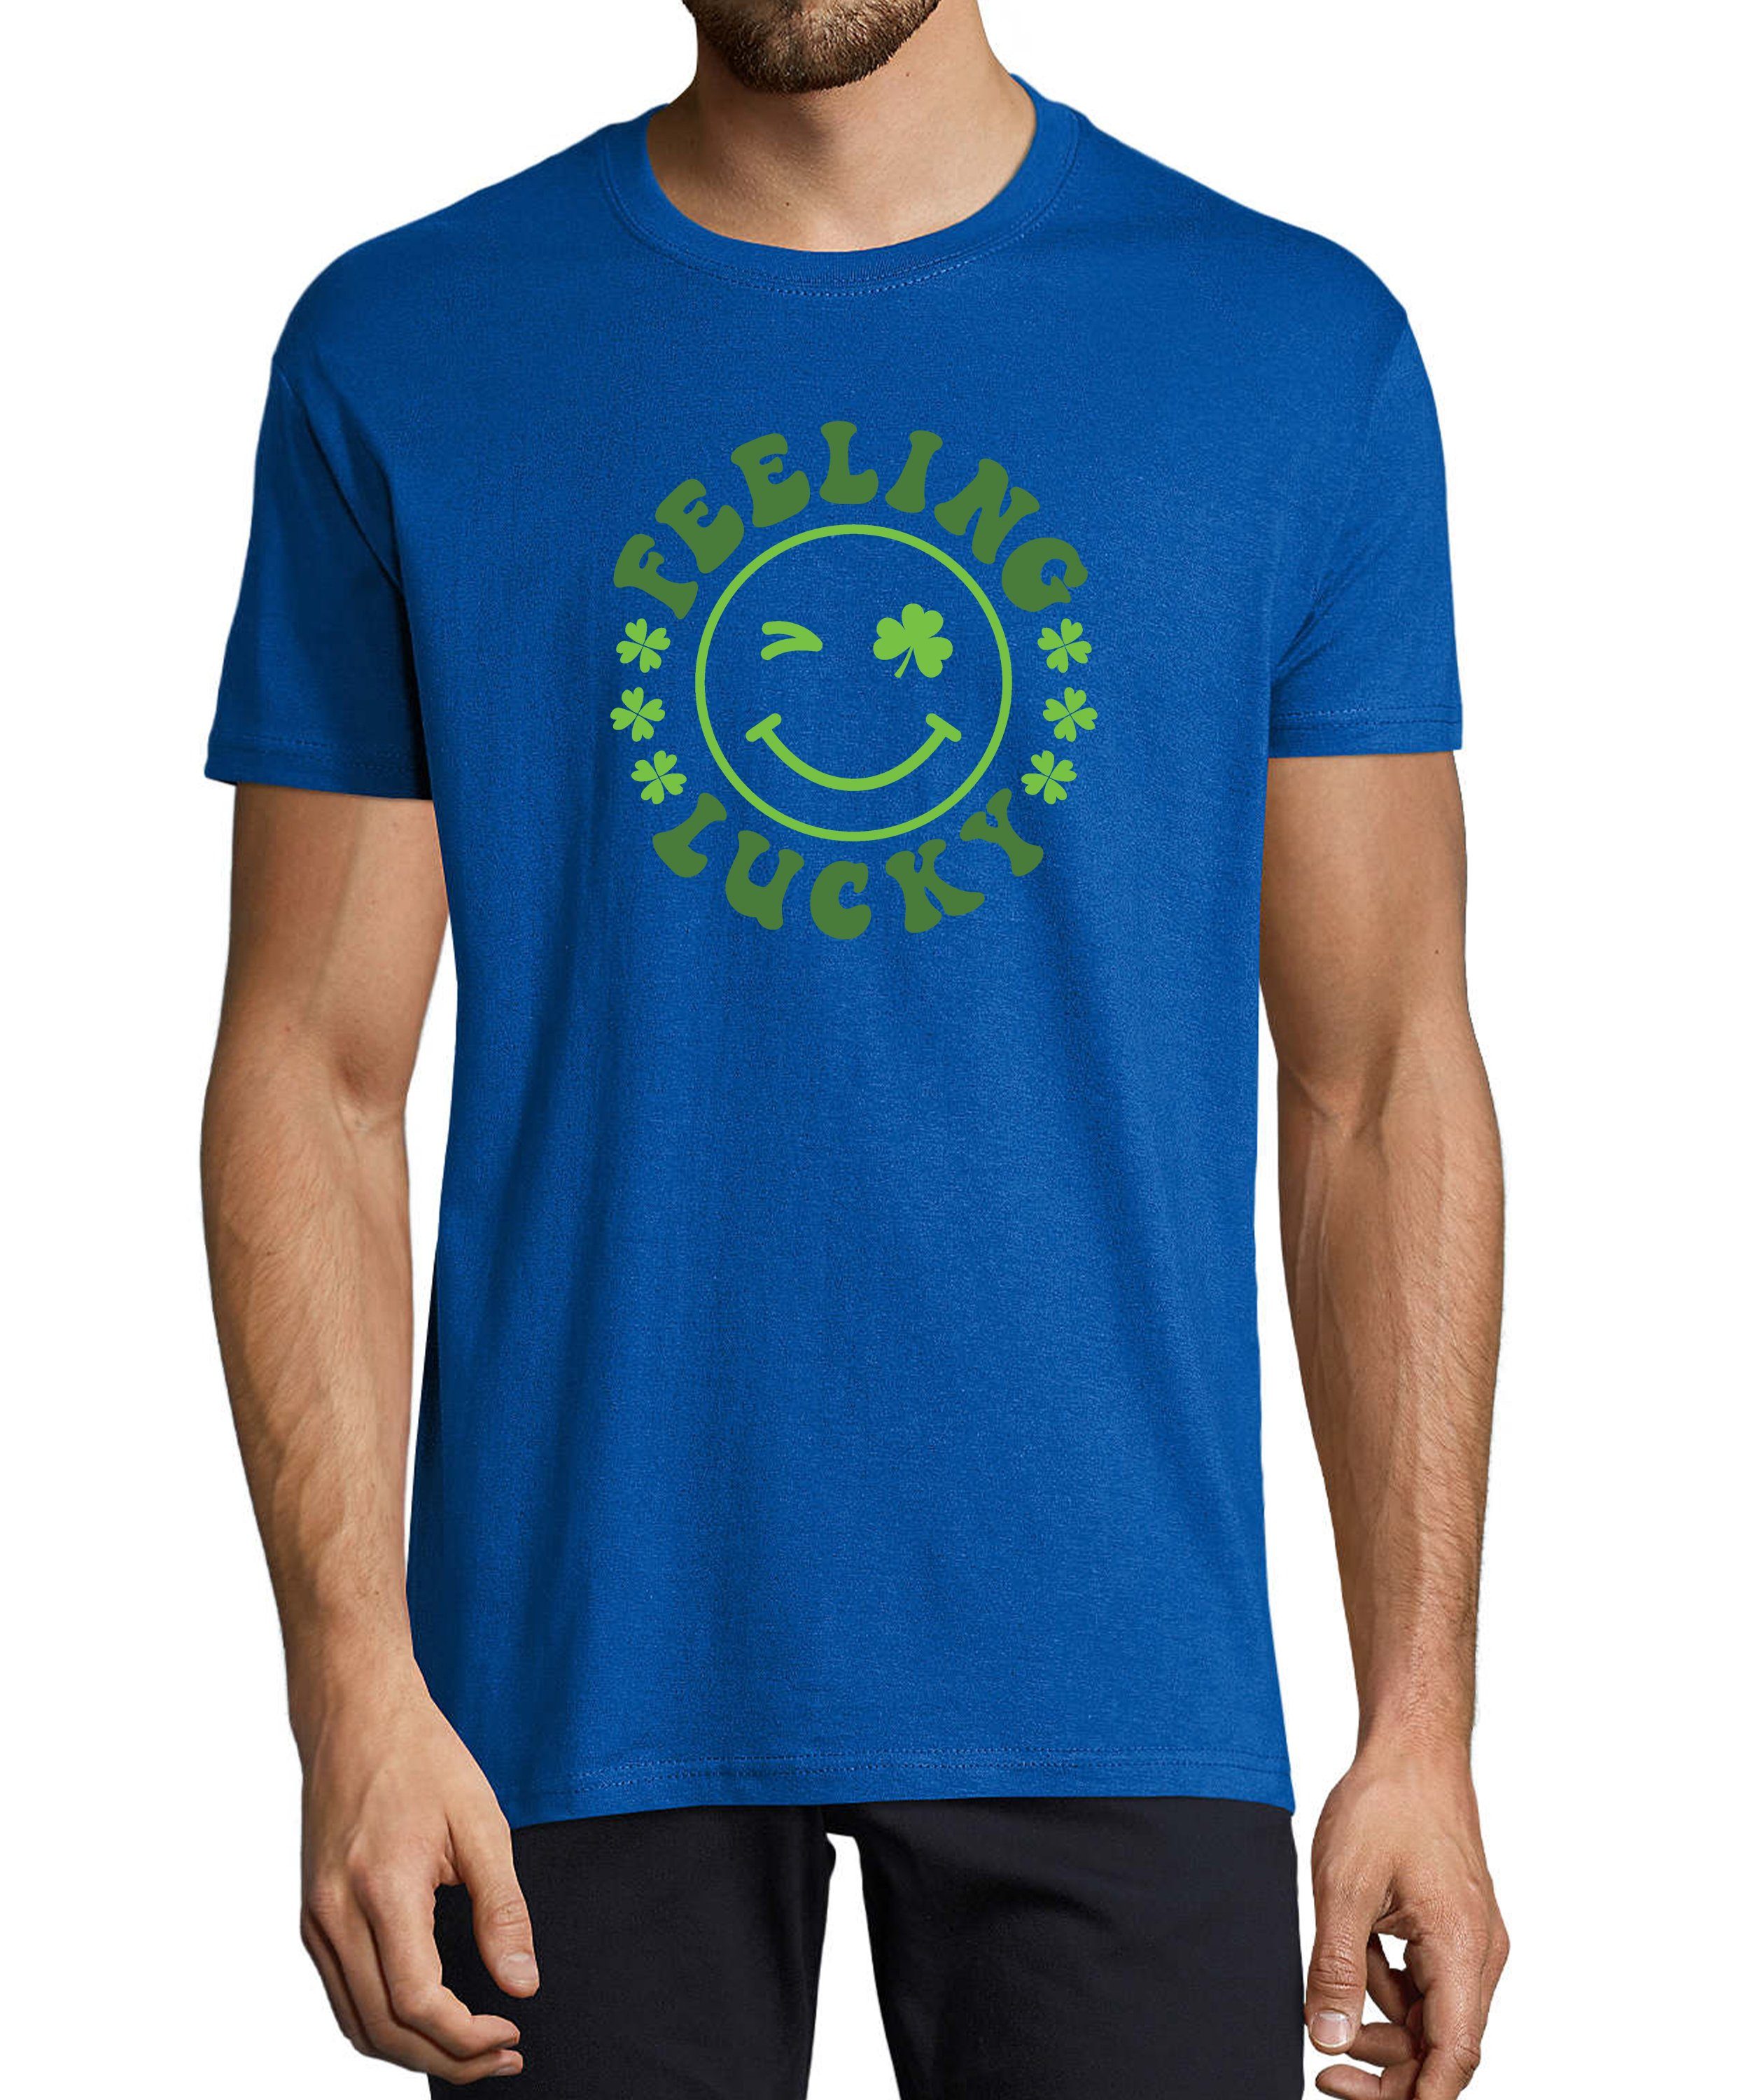 MyDesign24 T-Shirt Herren Smiley Print Shirt - Zwinkernder Smiley mit Kleeblättern Baumwollshirt mit Aufdruck Regular Fit, i295 royal blau | T-Shirts